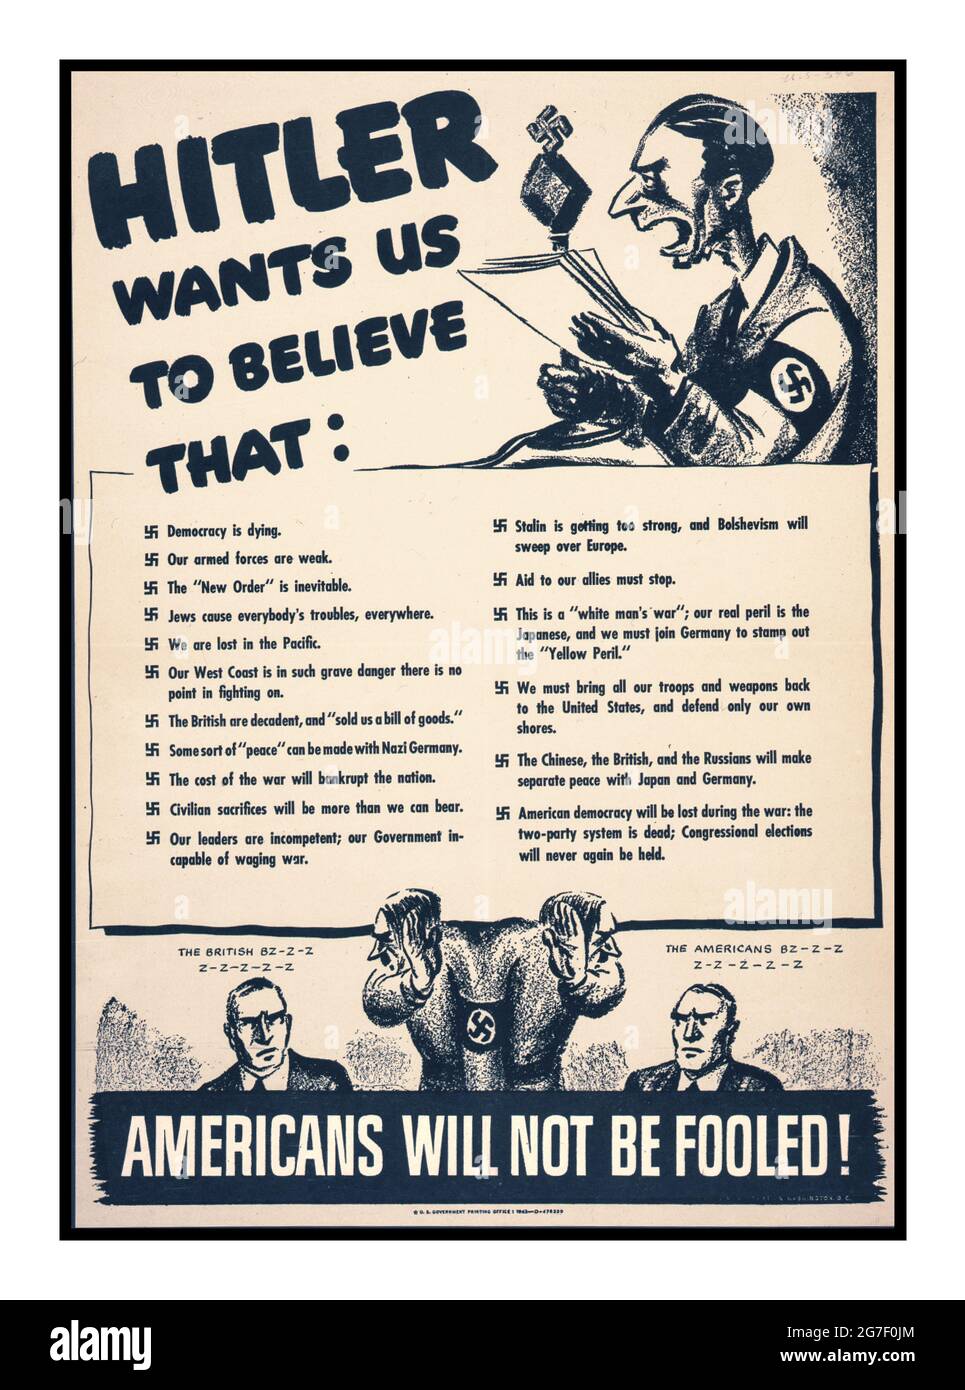 Vintage WW2 anti-propagande nazie affiche avec une caricature caricature de dessin Dr Joseph Goebbels avec le brassard de swastika, lisant une liste de distorsions politiques nazies. « Hitler veut que nous croyions » « les Américains ne seront pas dupés » la propagande américaine anti-nazie de la Seconde Guerre mondiale Banque D'Images